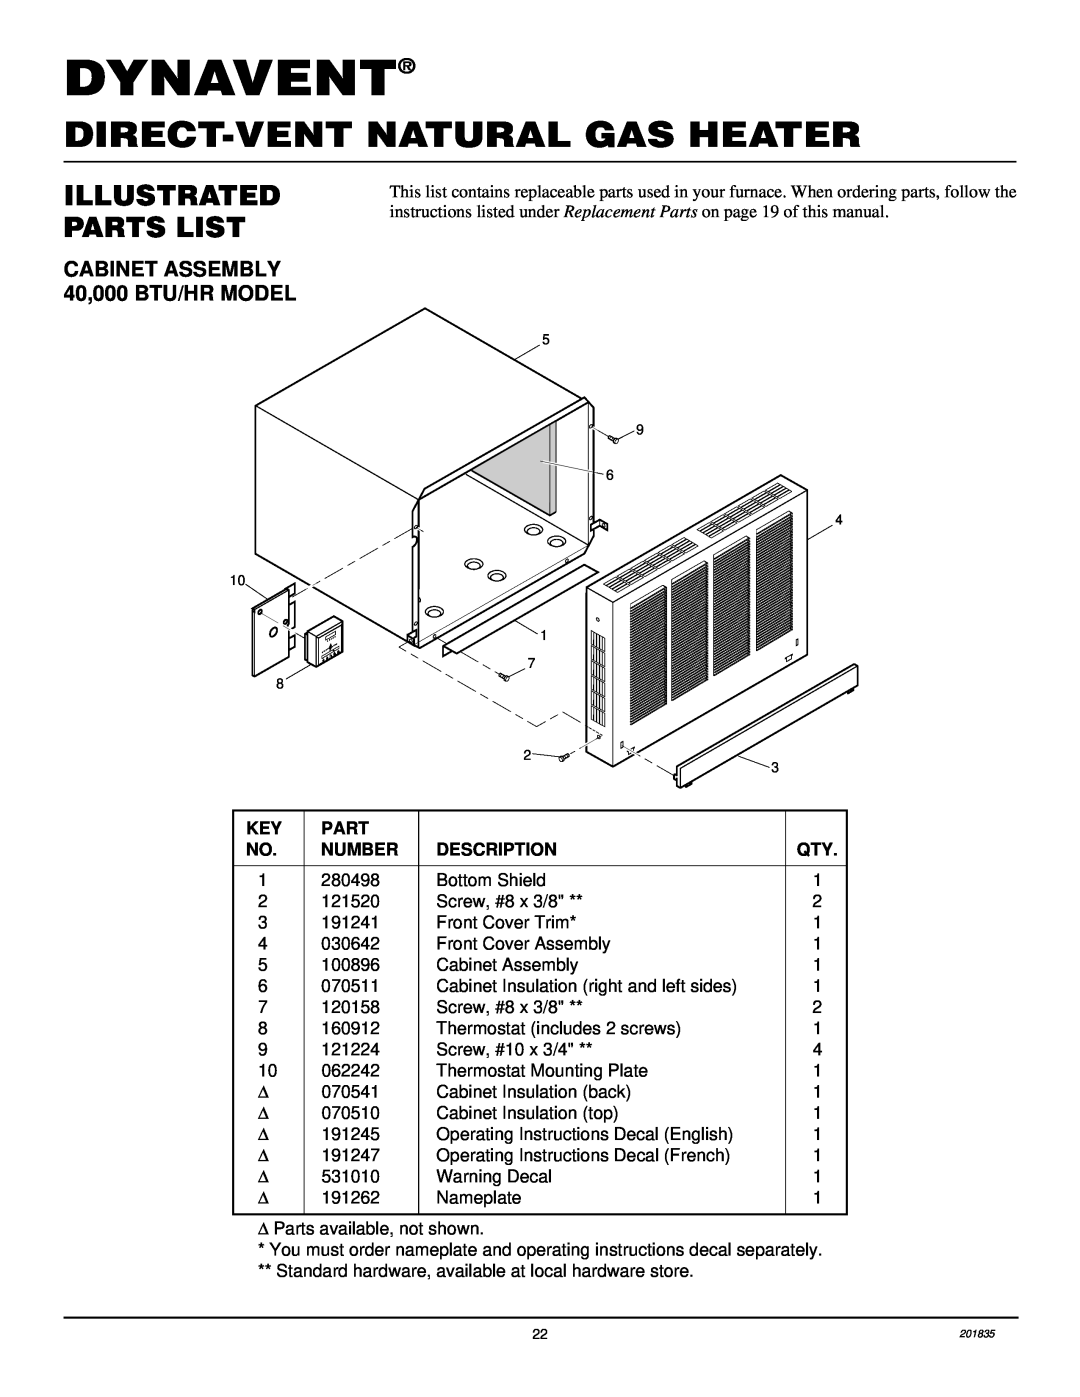 Desa DNV40NB Dynavent, Direct-Ventnatural Gas Heater, Illustrated Parts List, CABINET ASSEMBLY 40,000 BTU/HR MODEL 